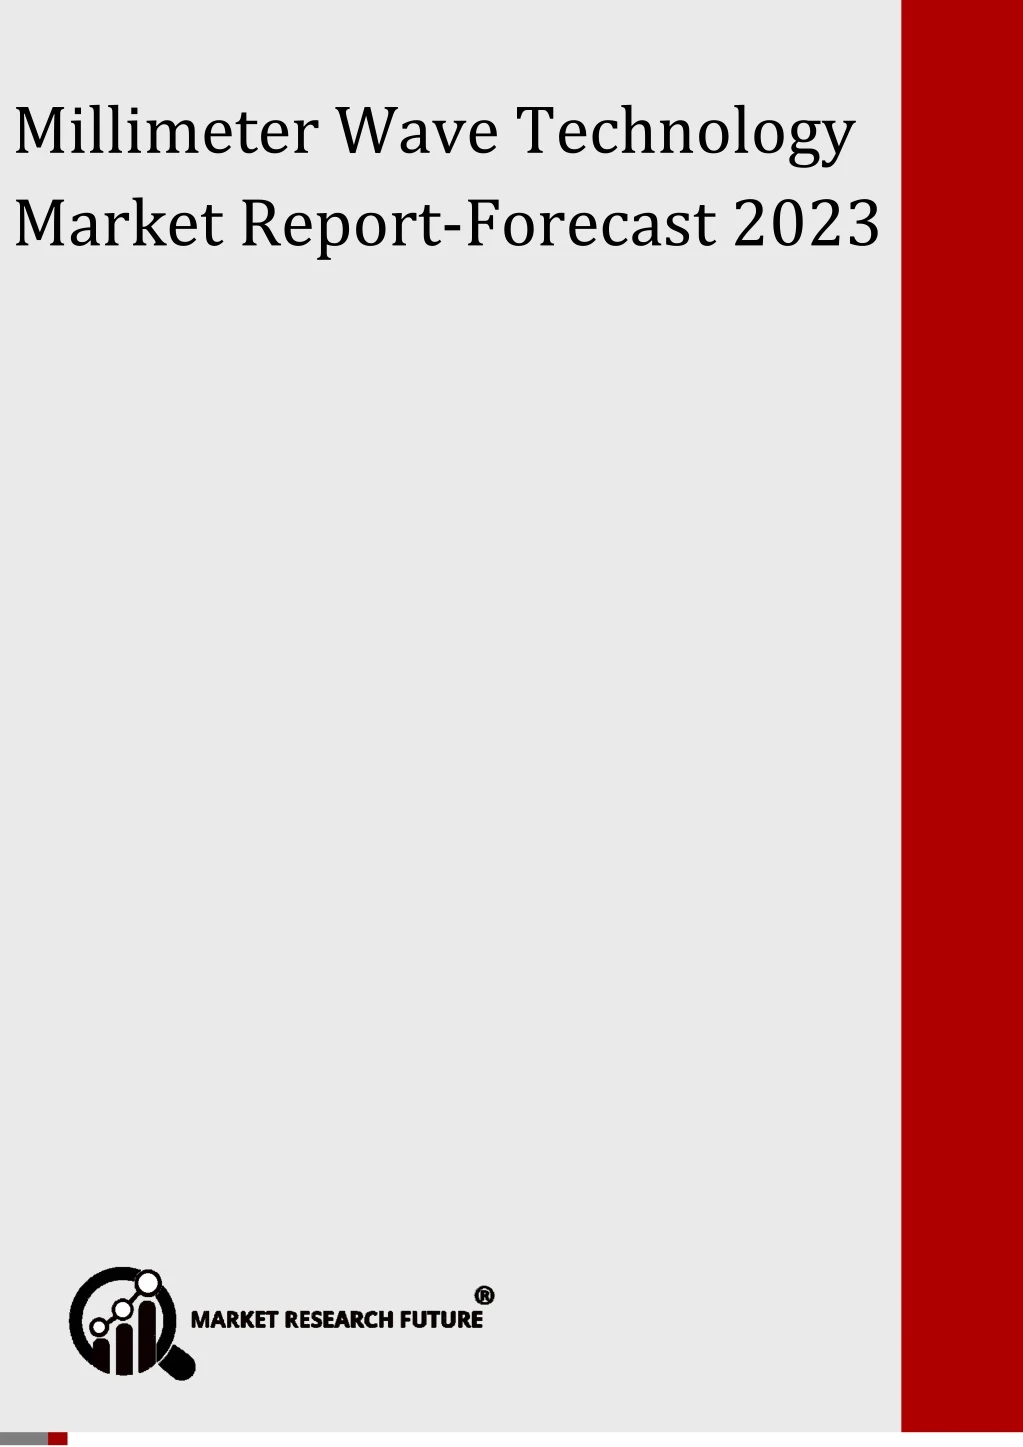 global millimeter wave technology market forecast